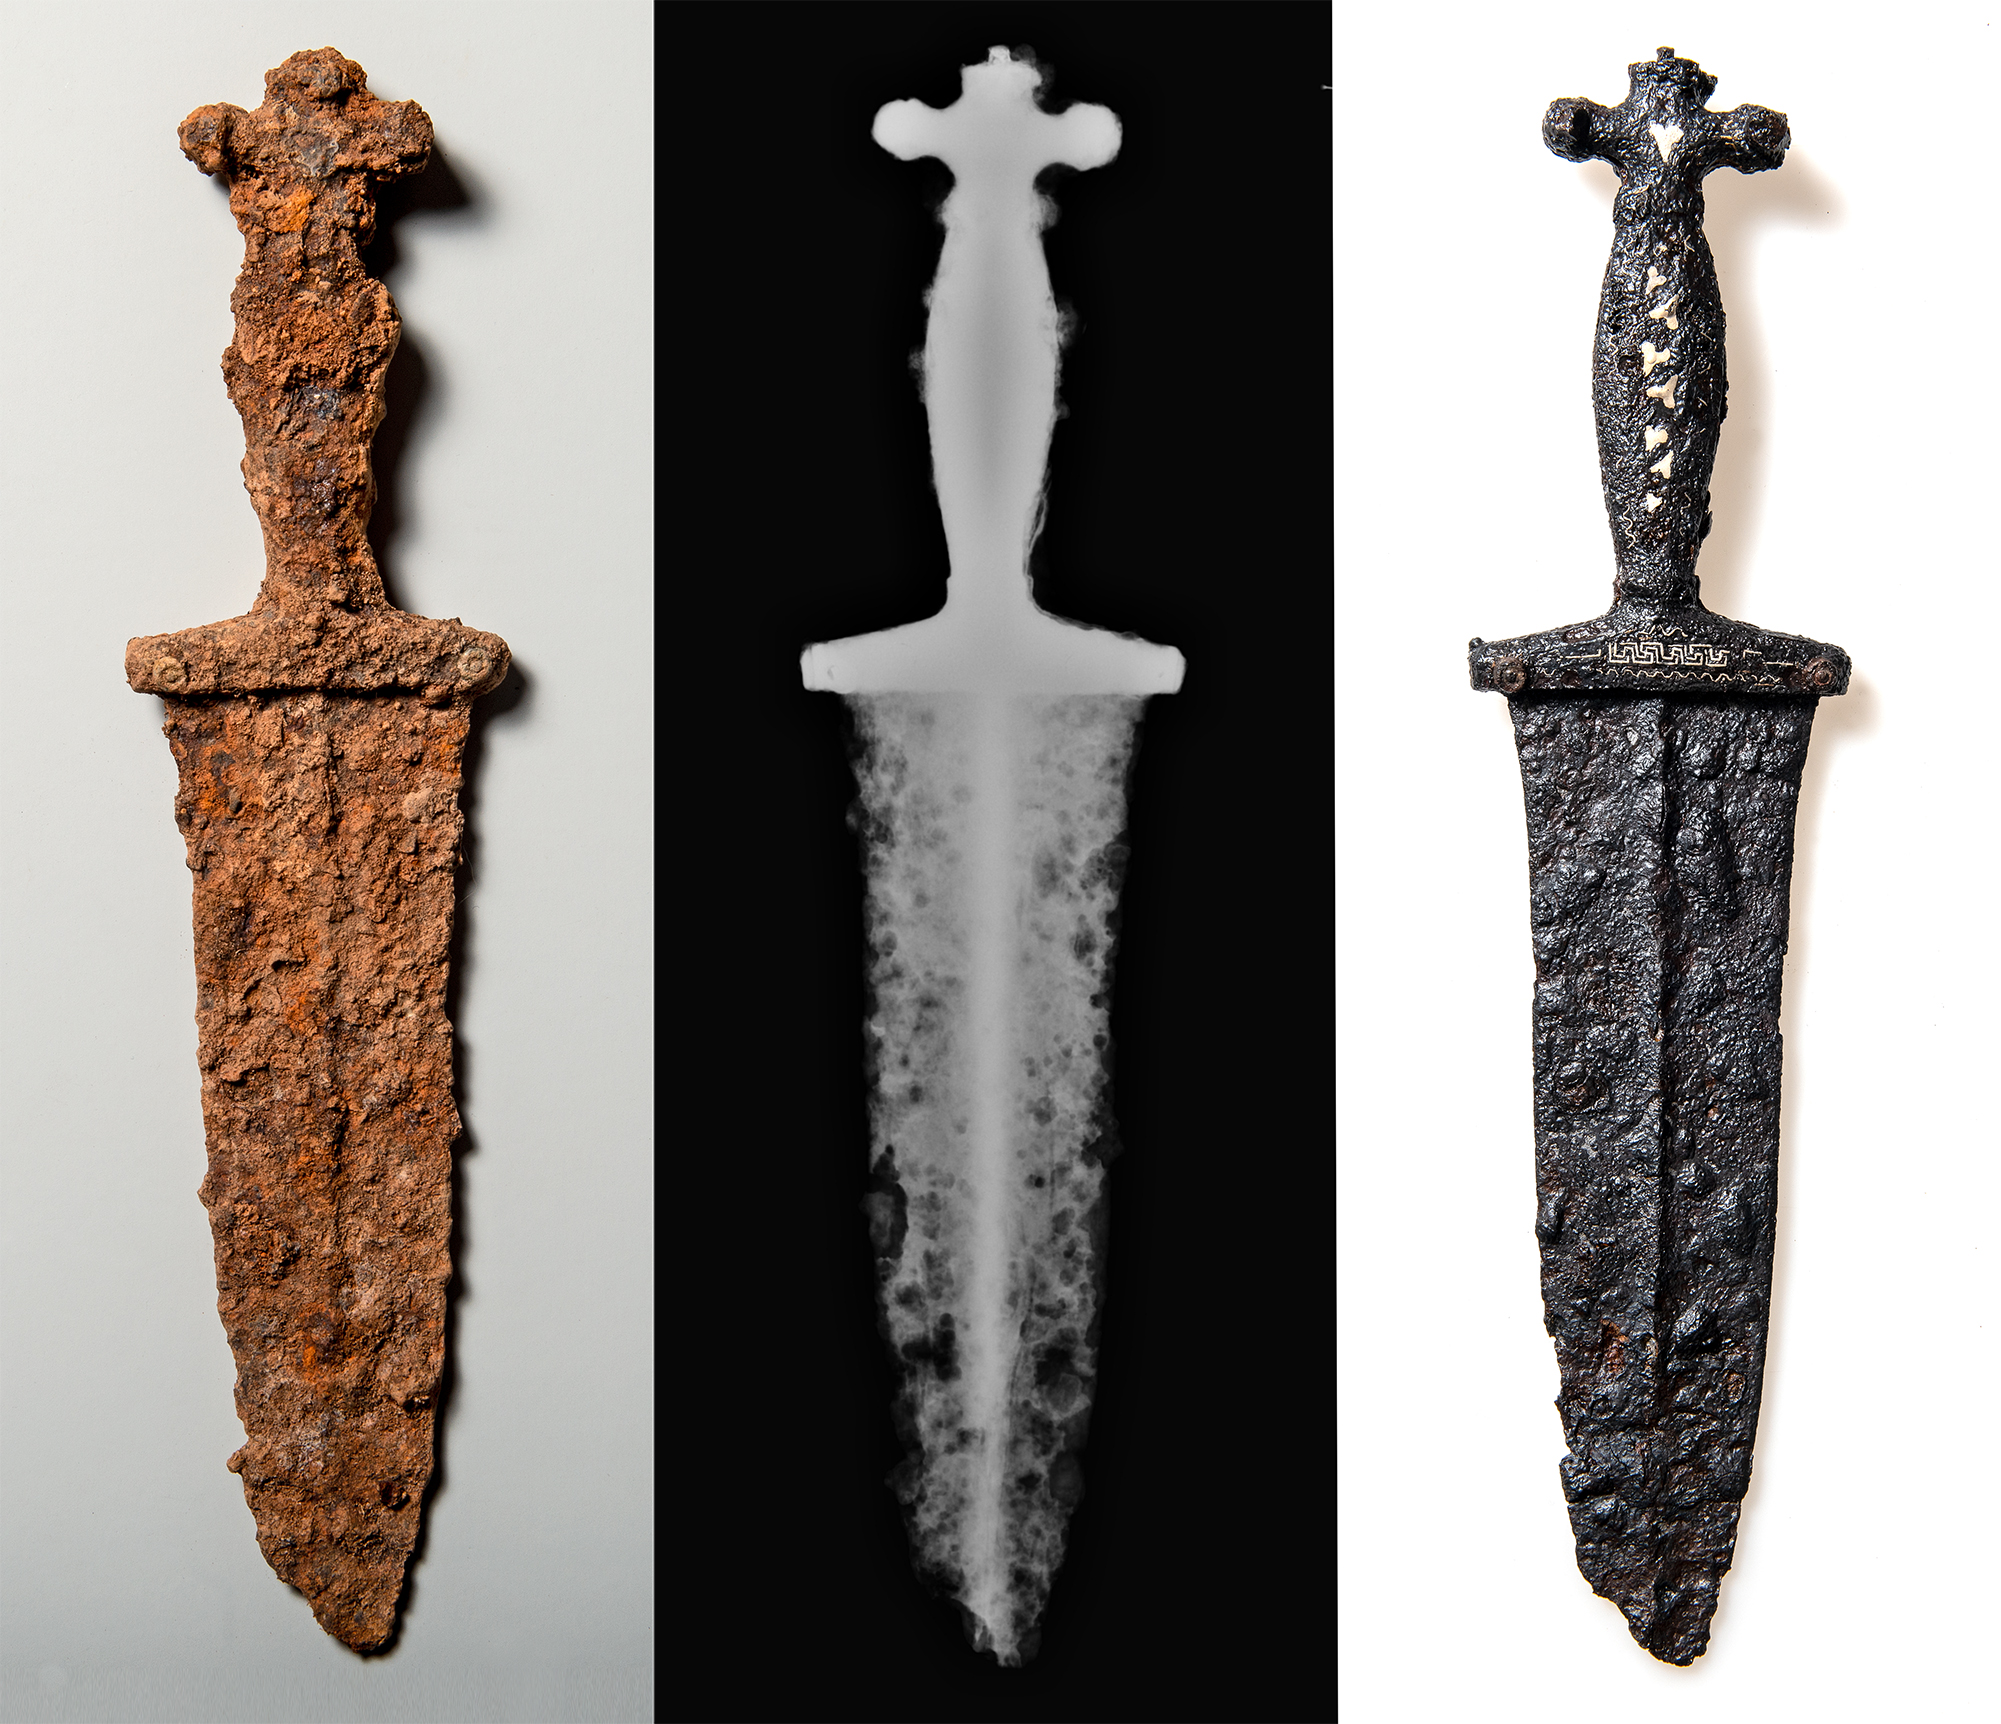 A Roman dagger found in canton Graubünden.